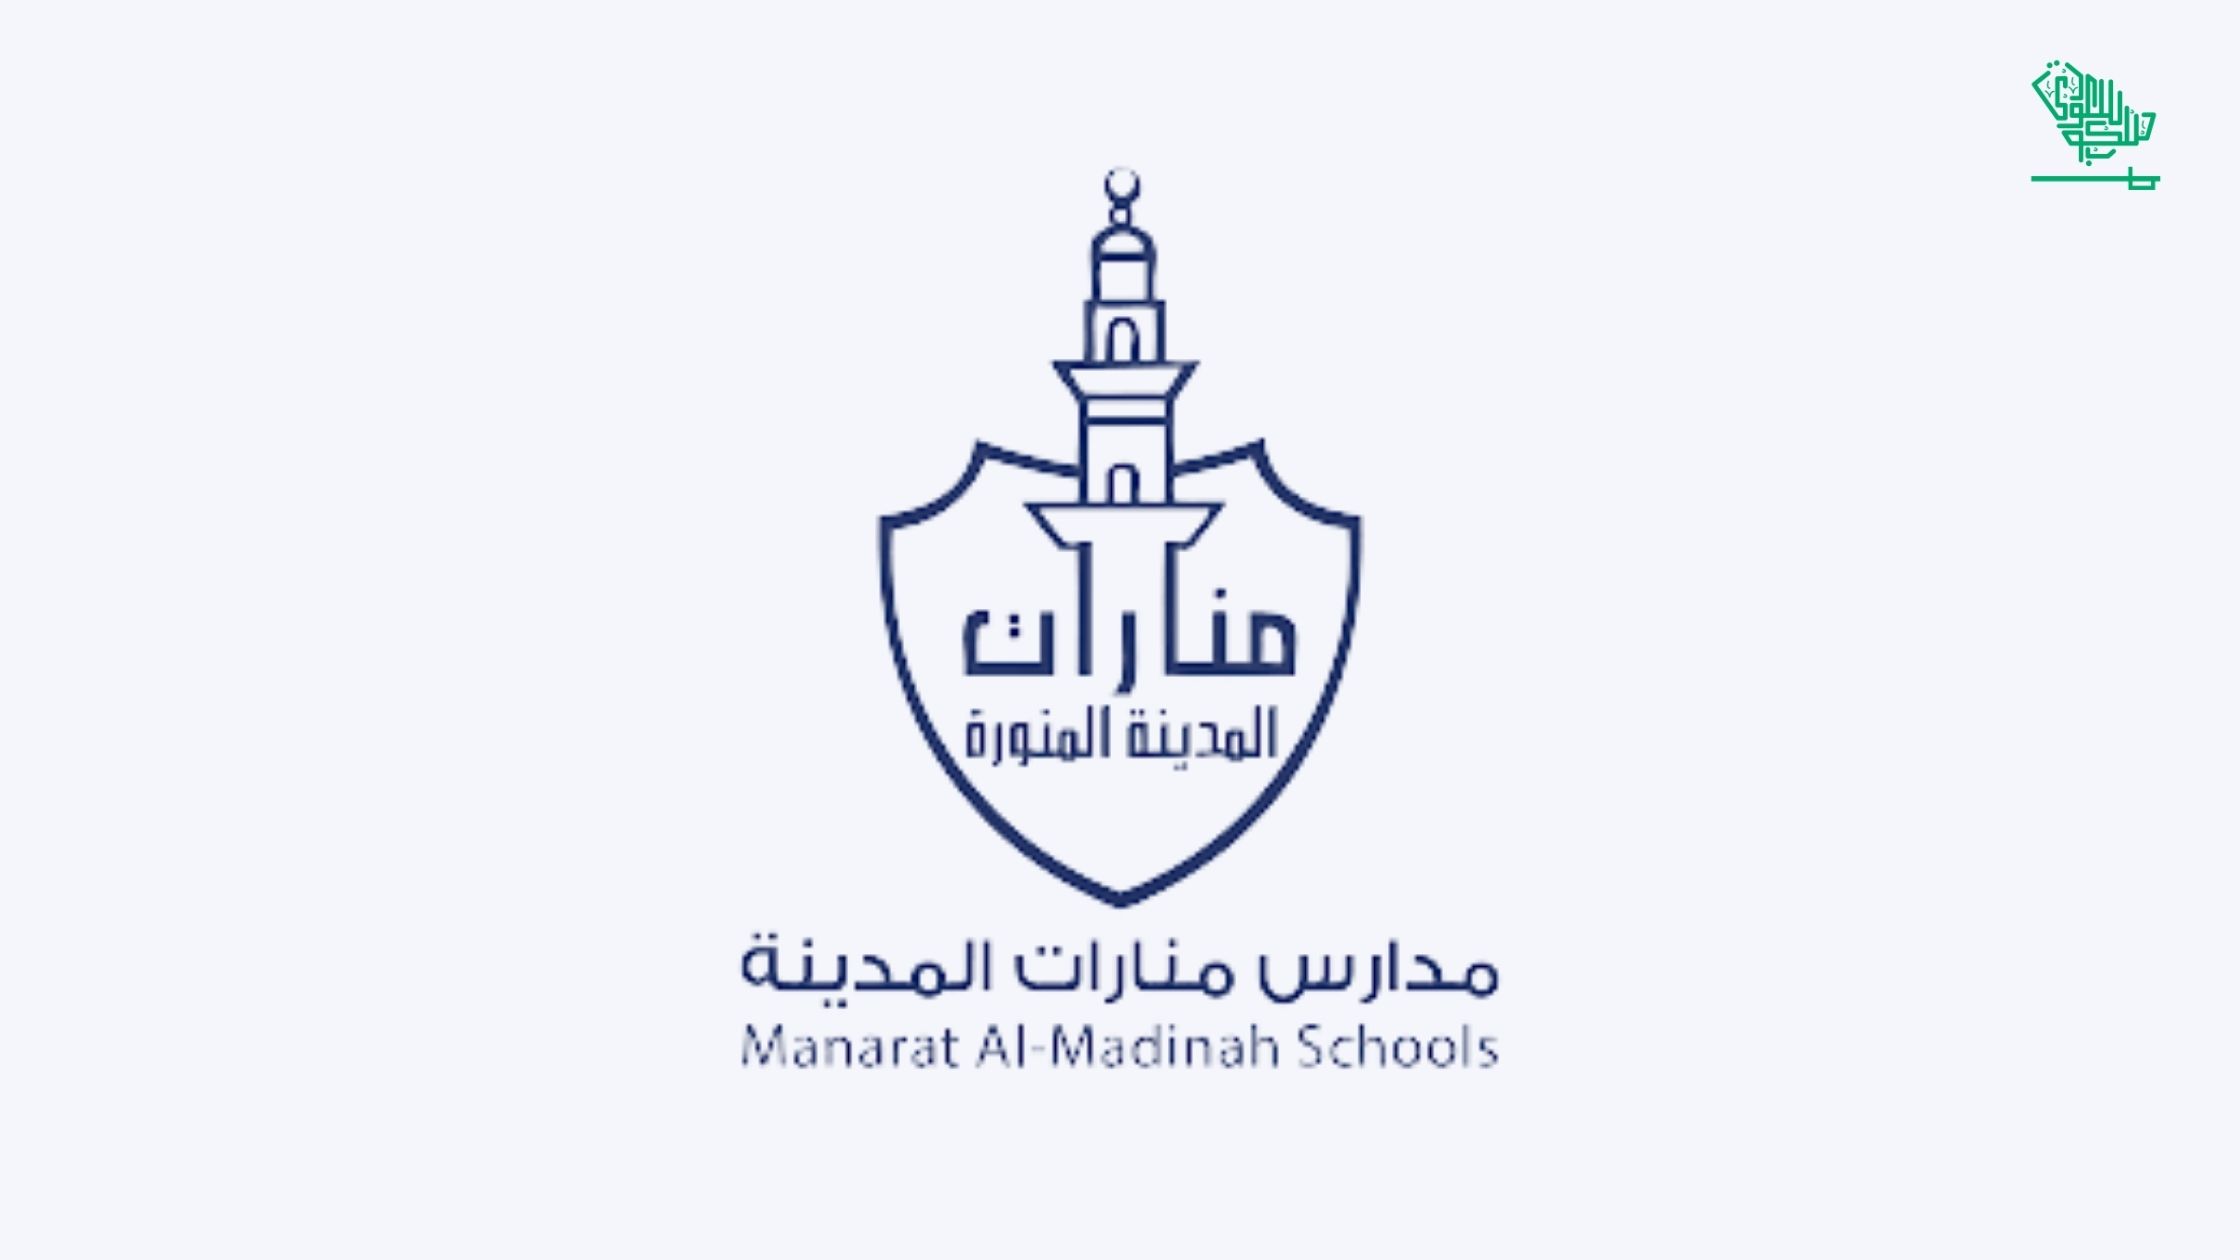 Manarat Al Madinah Schools International